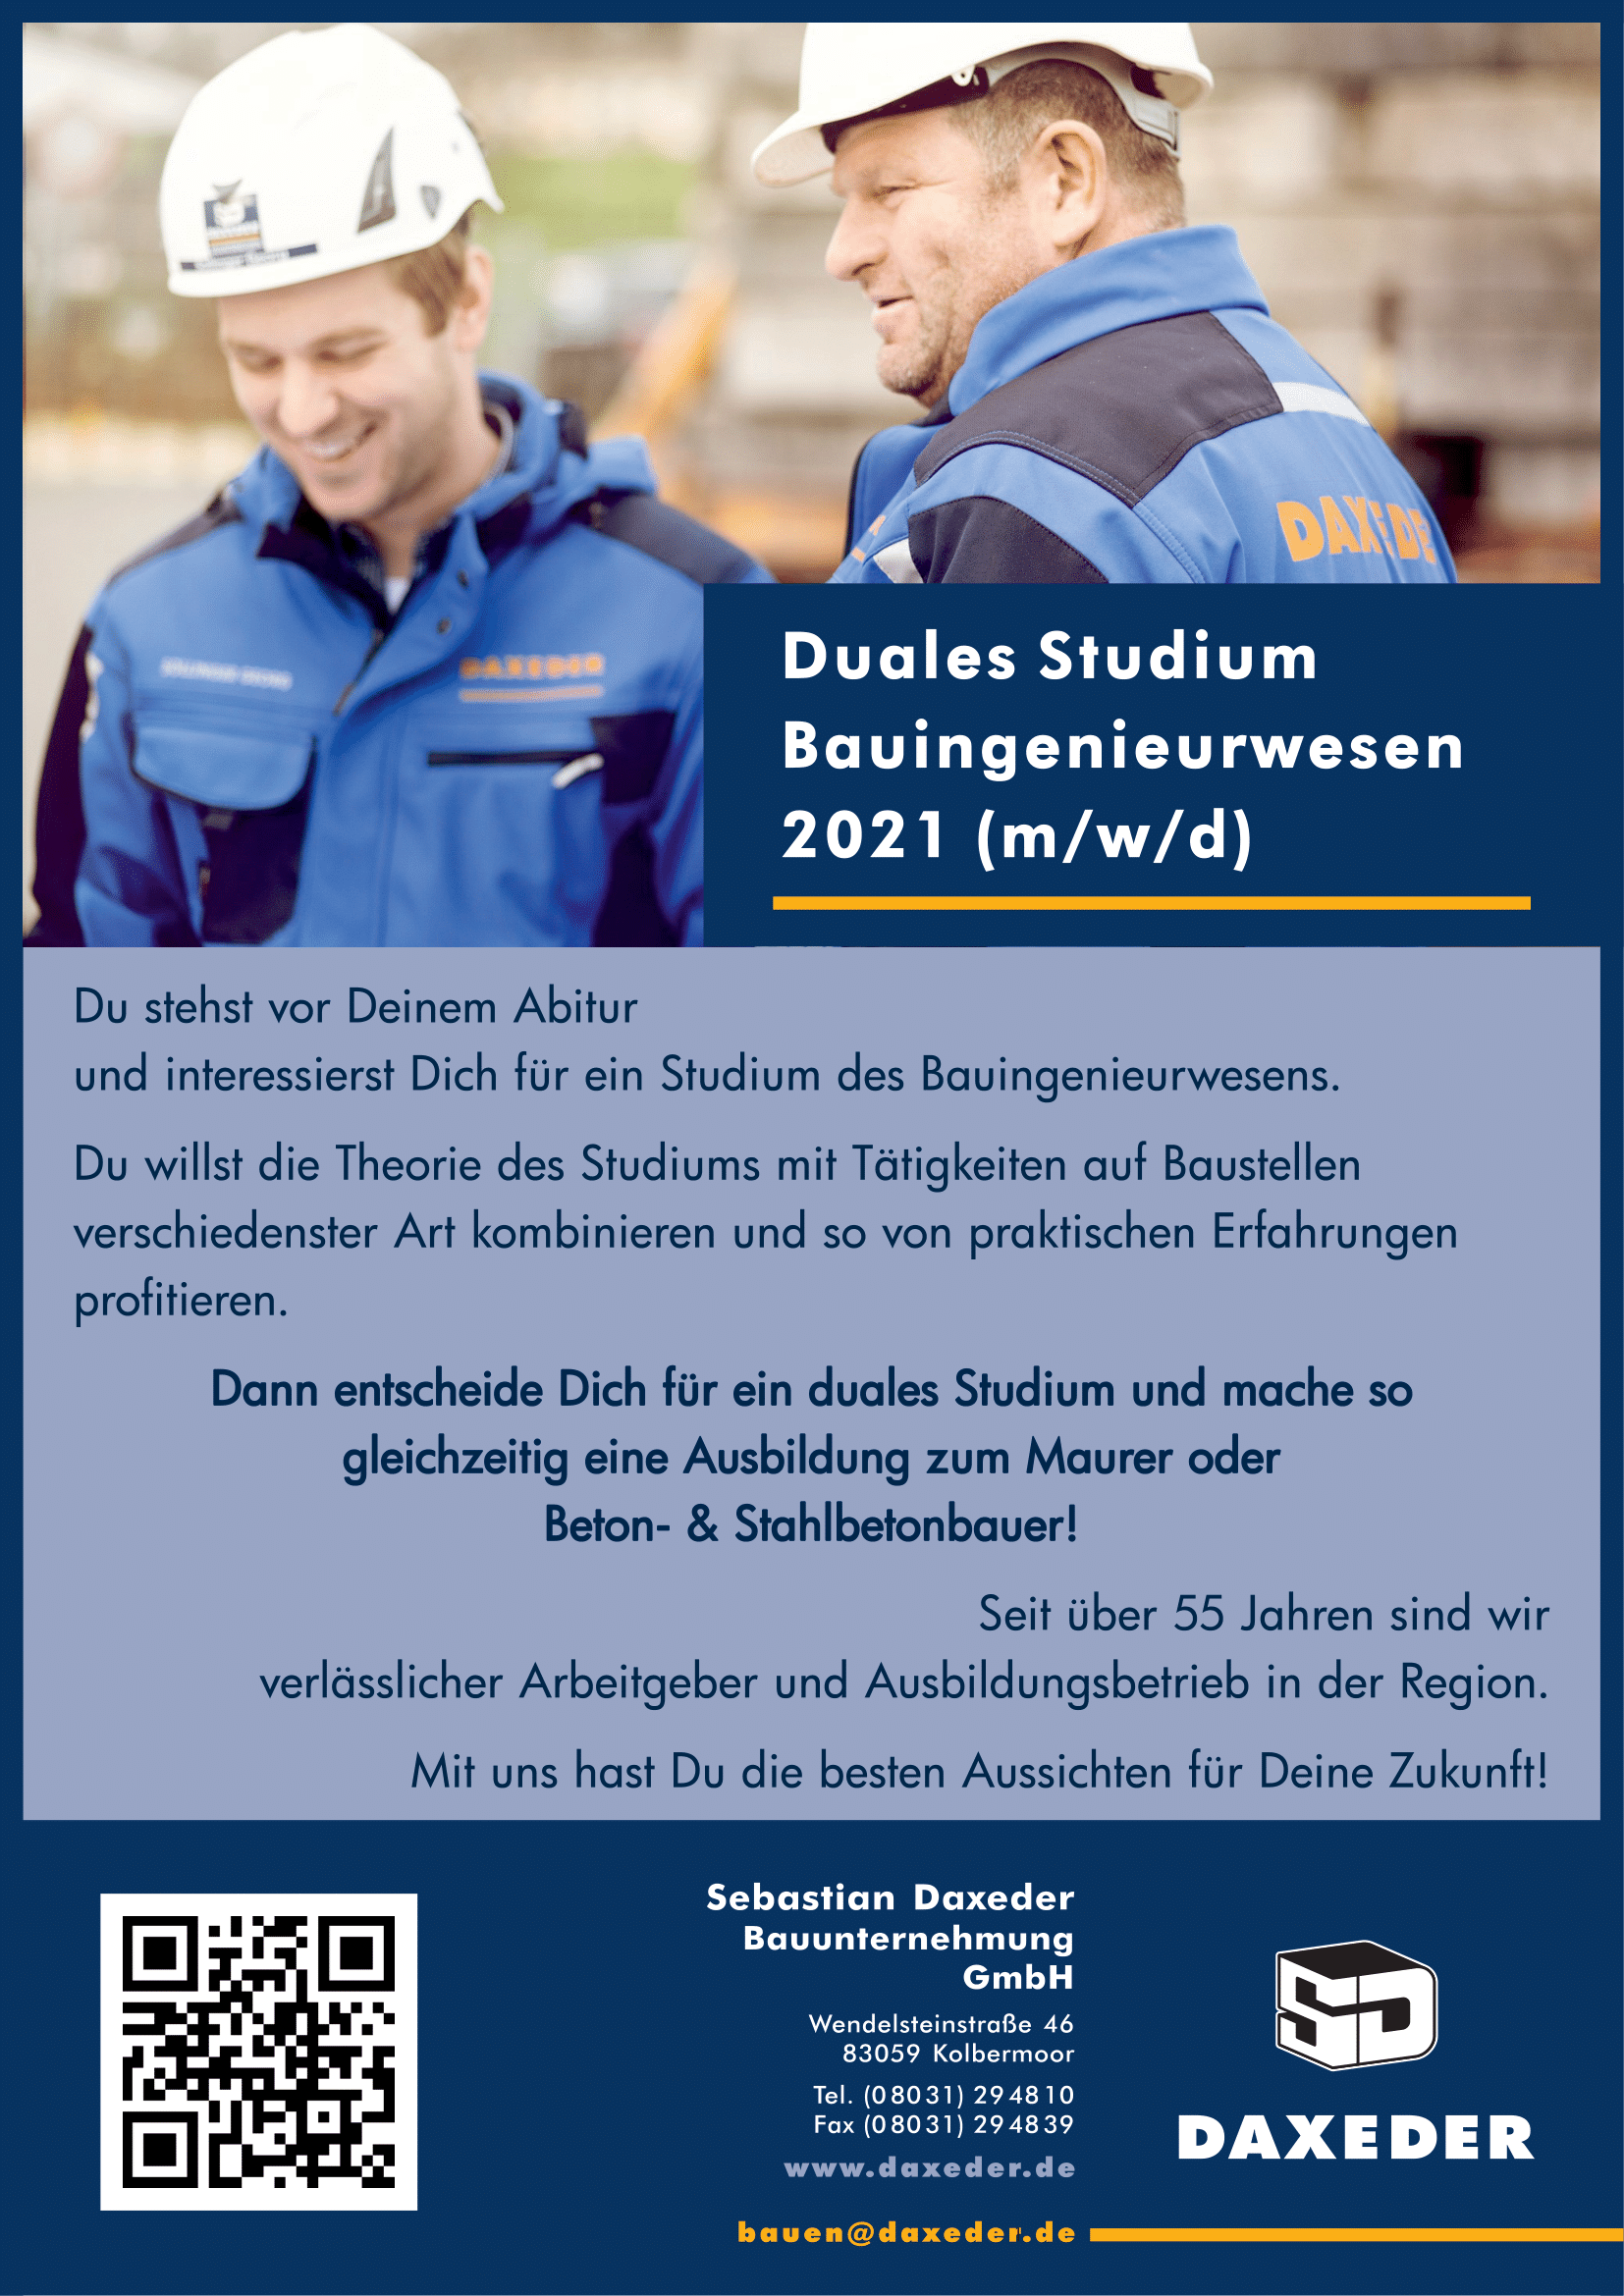 Ausbildung Duales Studium Bauingenieurwesen 2021 bei der Sebastian Daxeder Bauunternehmung GmbH, Kolbermoor Landkreis Rosenheim